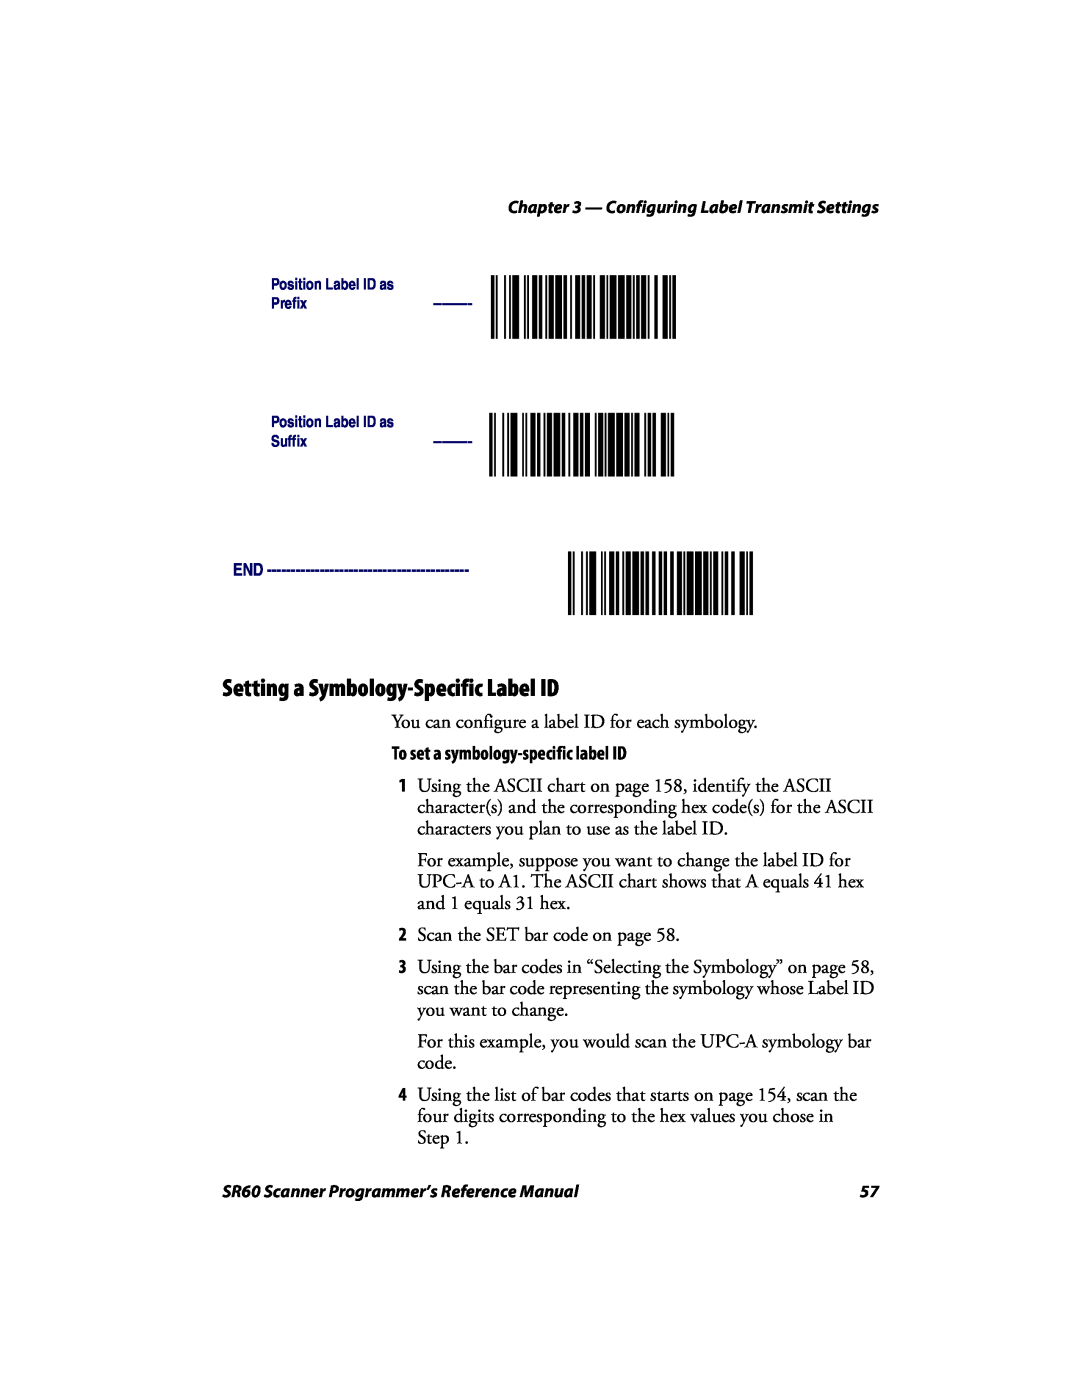 Intermec SR60 manual Setting a Symbology-Specific Label ID, To set a symbology-specific label ID 